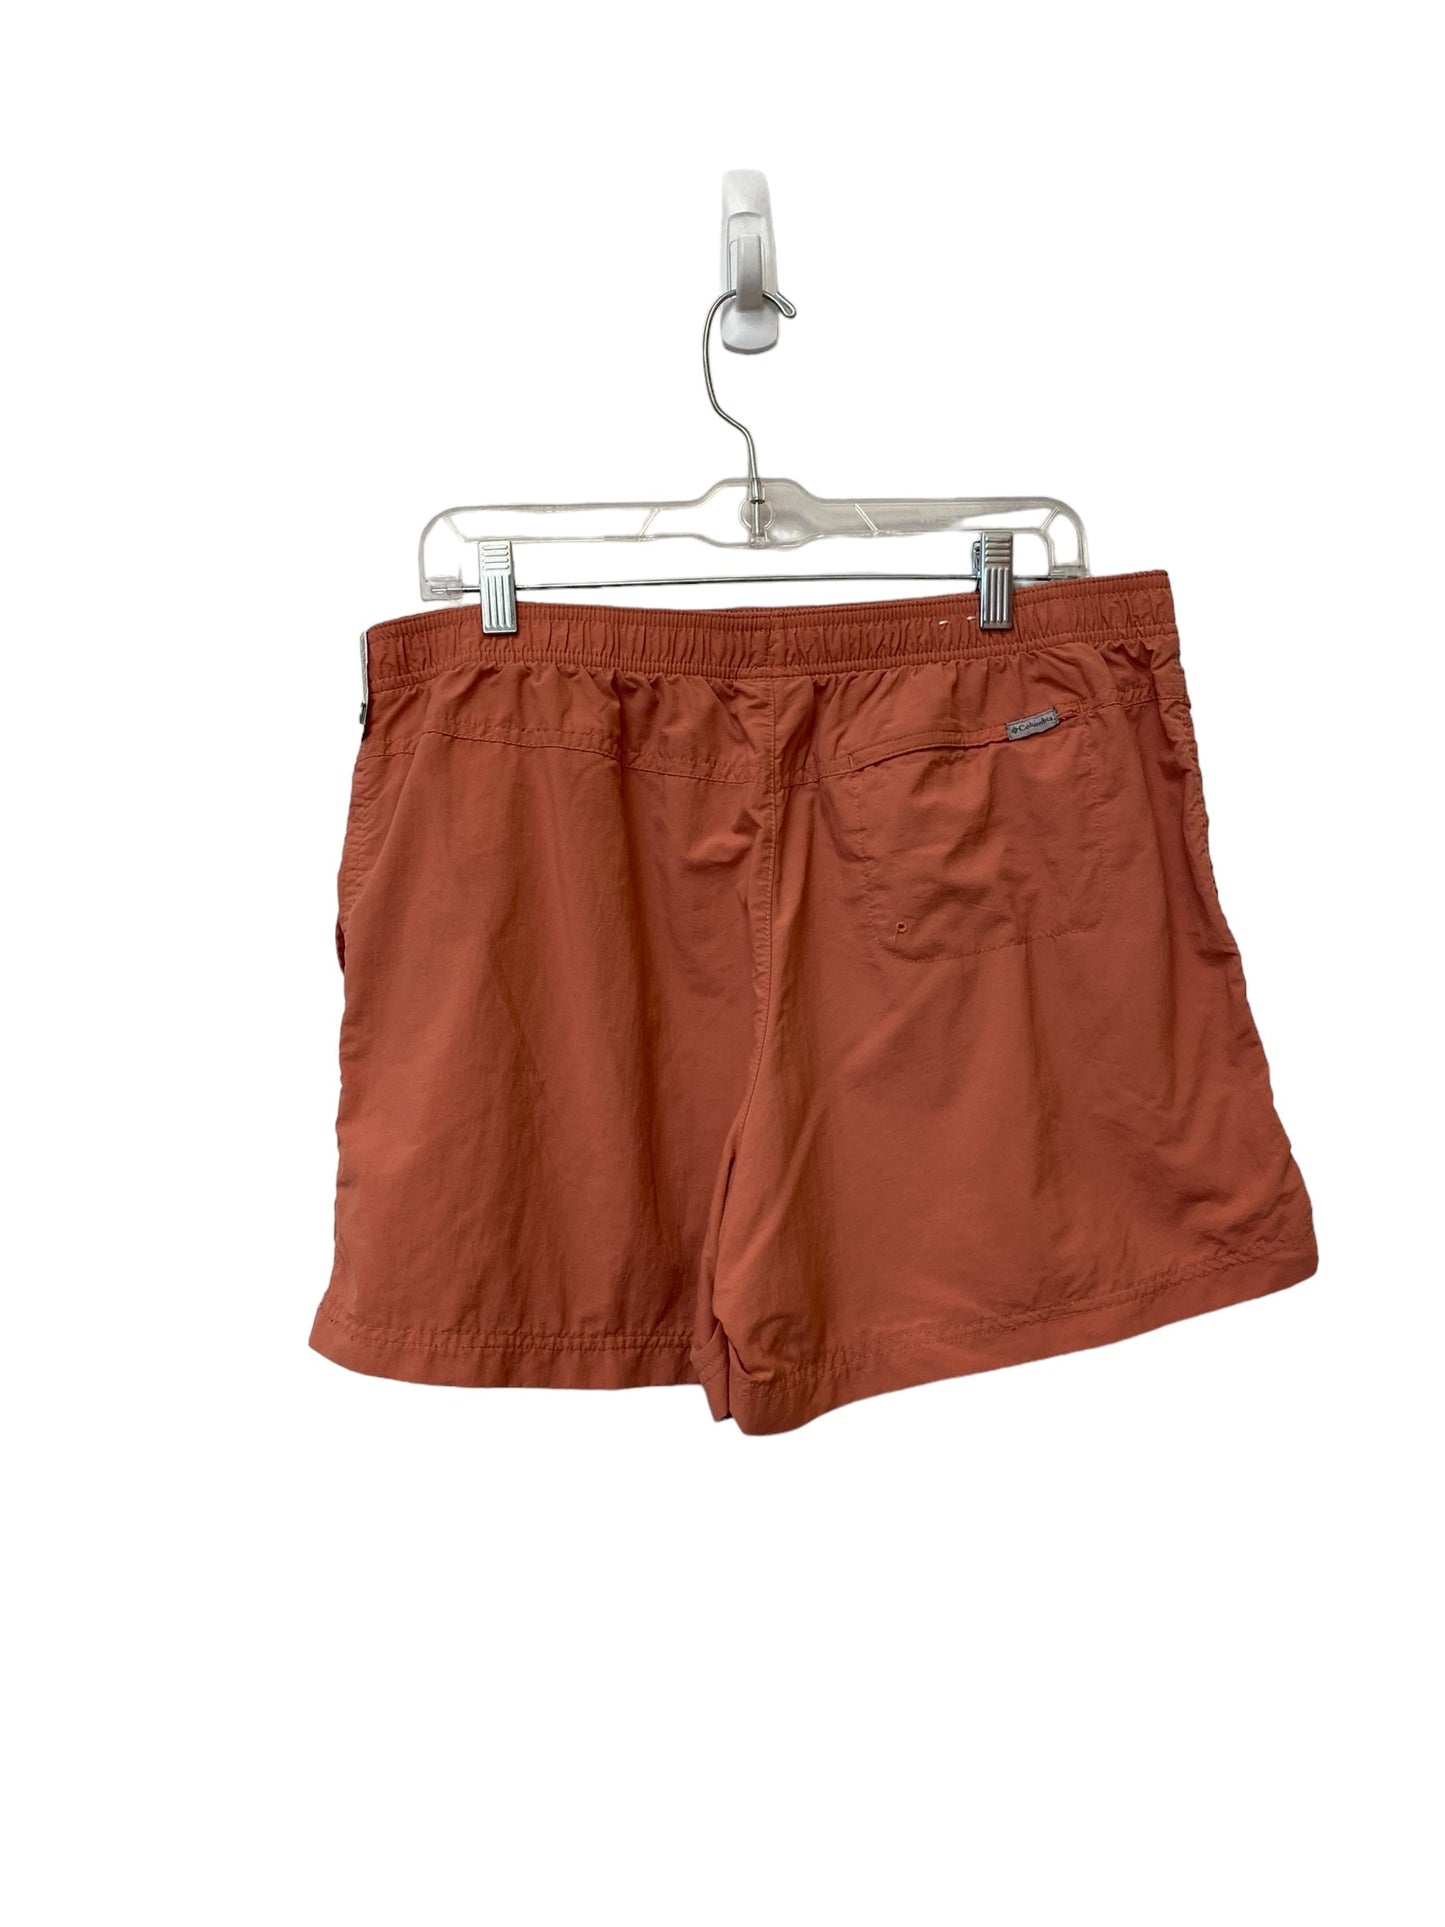 Orange Shorts Columbia, Size Xl